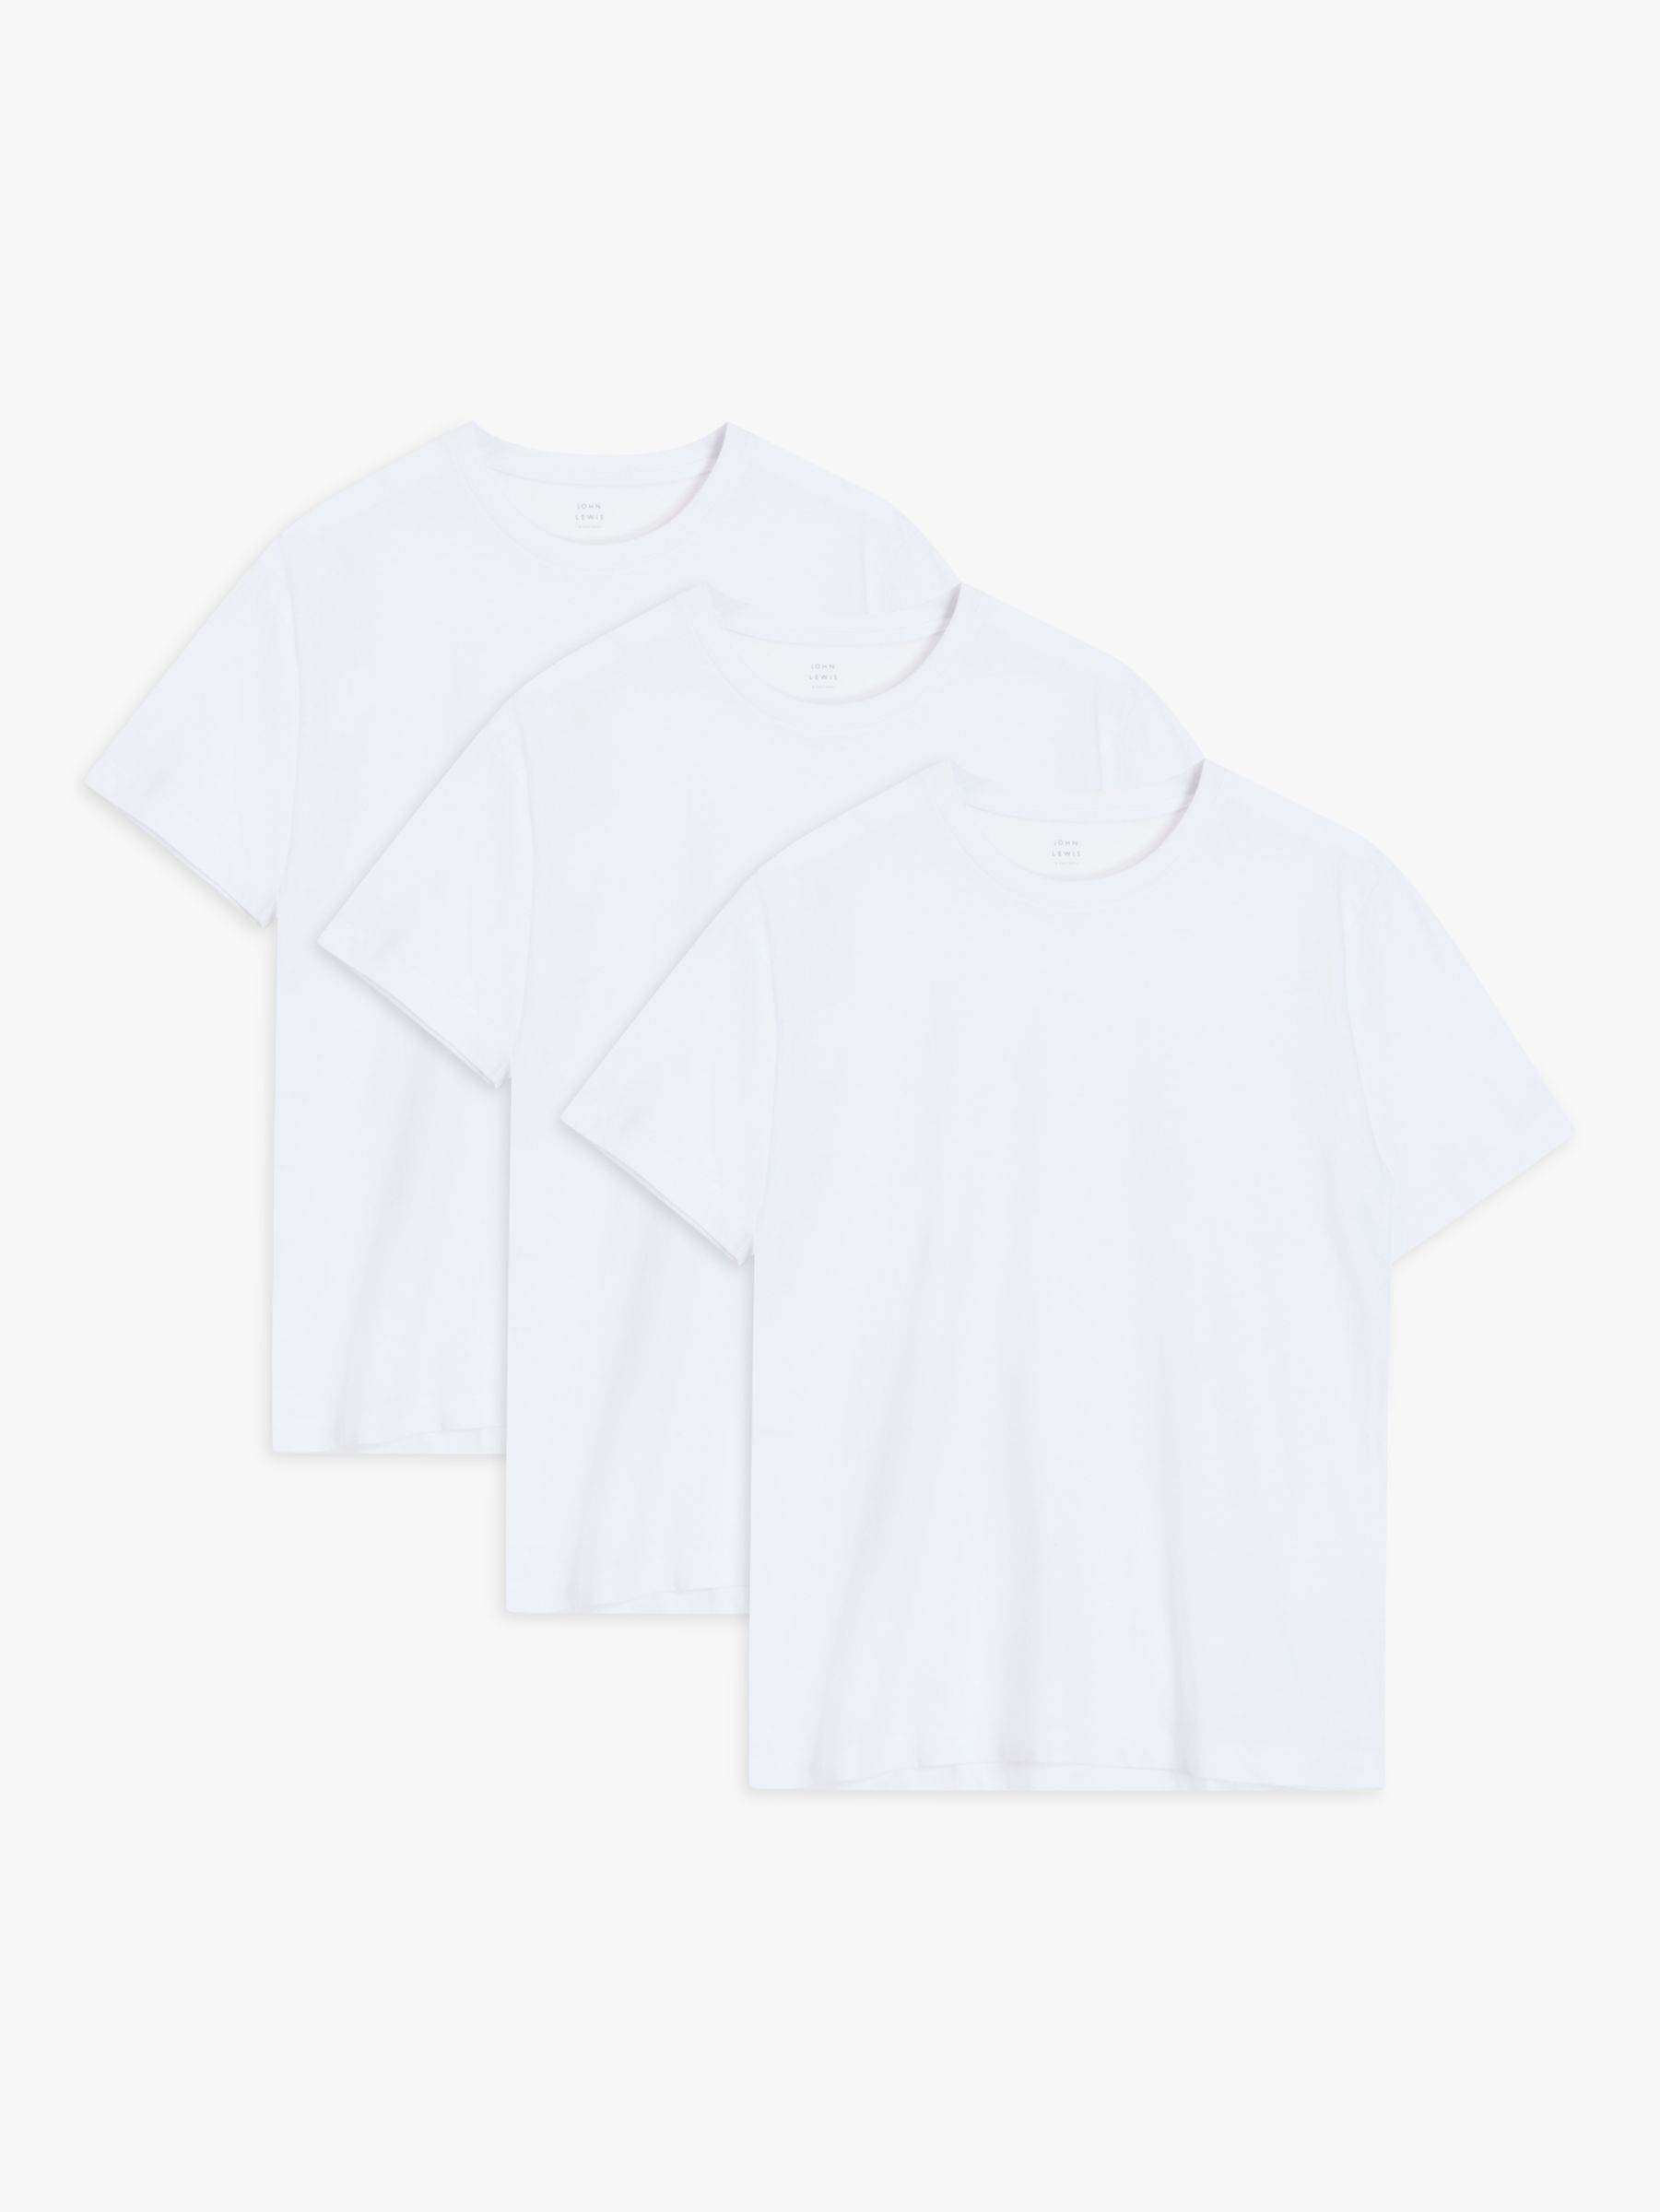 John Lewis Cotton T-Shirt, Pack of 3, White at John Lewis & Partners